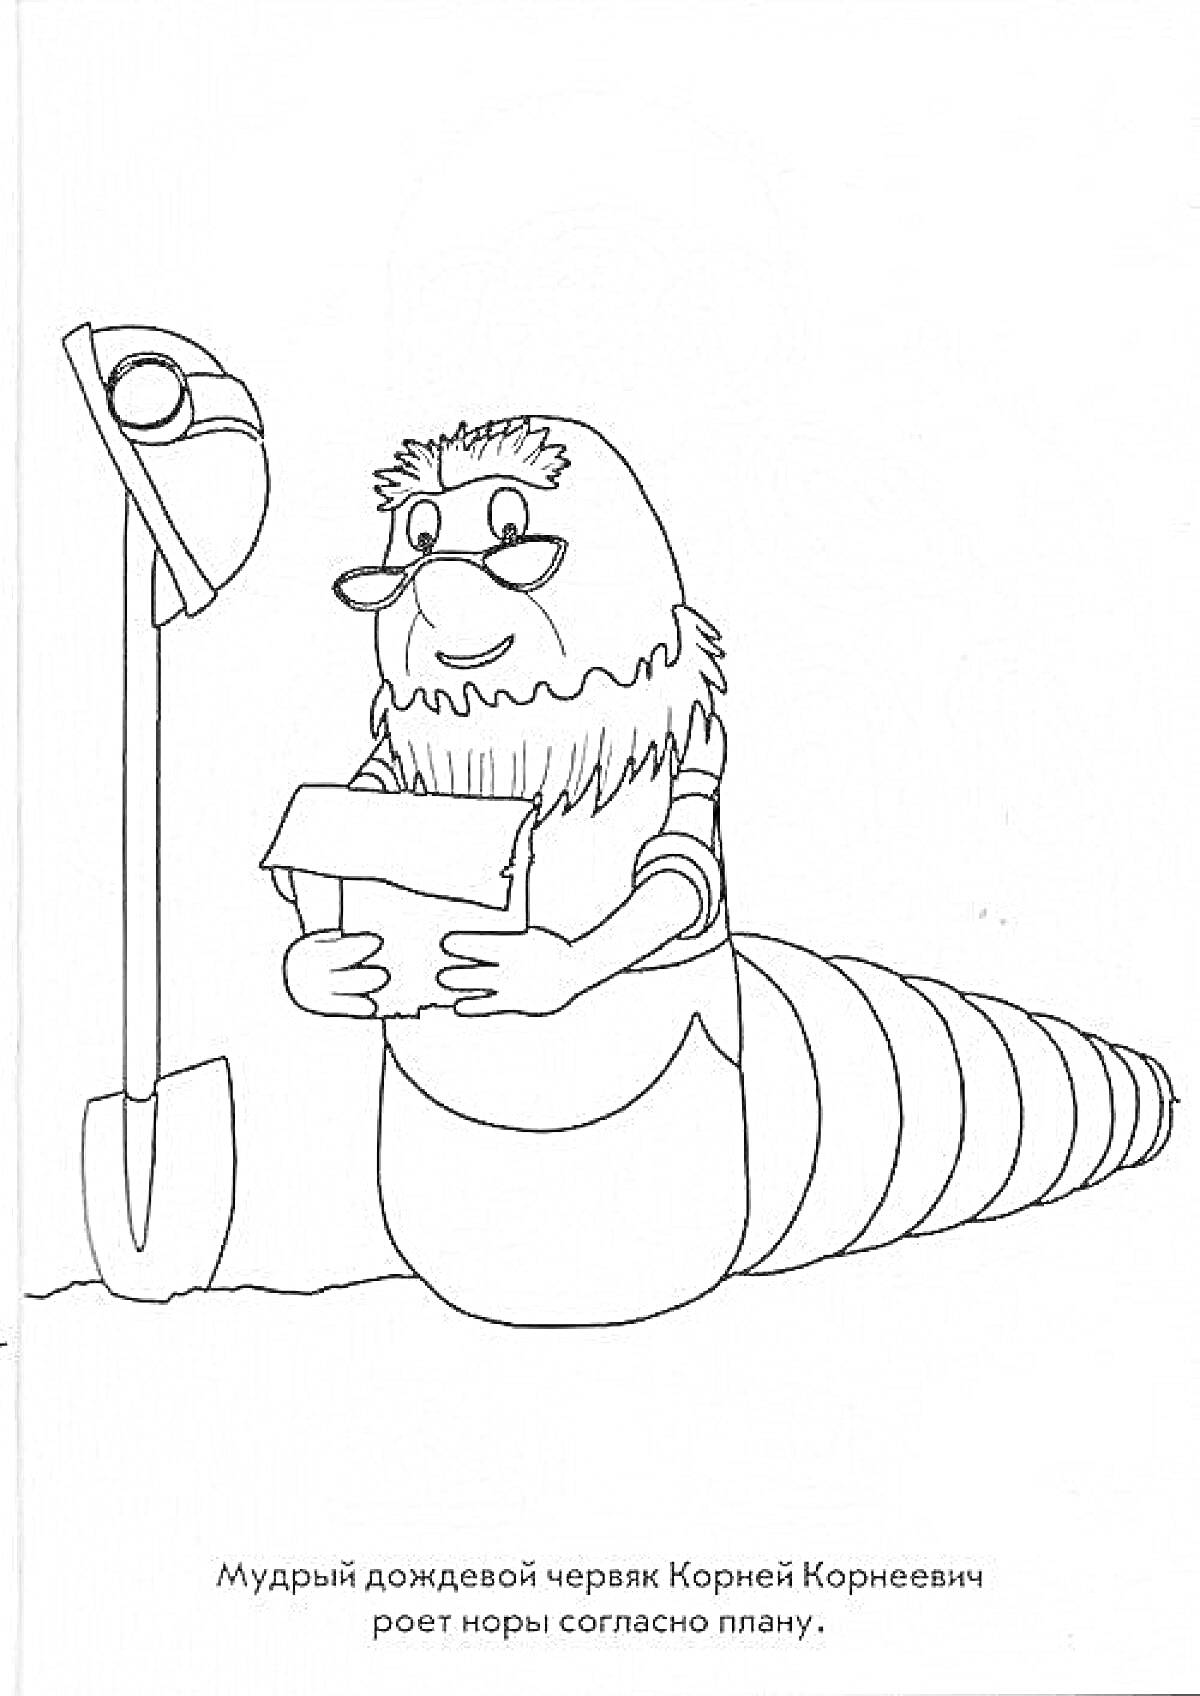 Раскраска Мудрый дождевой червяк Корней Корнеевич роет норы согласно плану, на картинке изображены червяк с бородой и очками, держащий план, и лопата